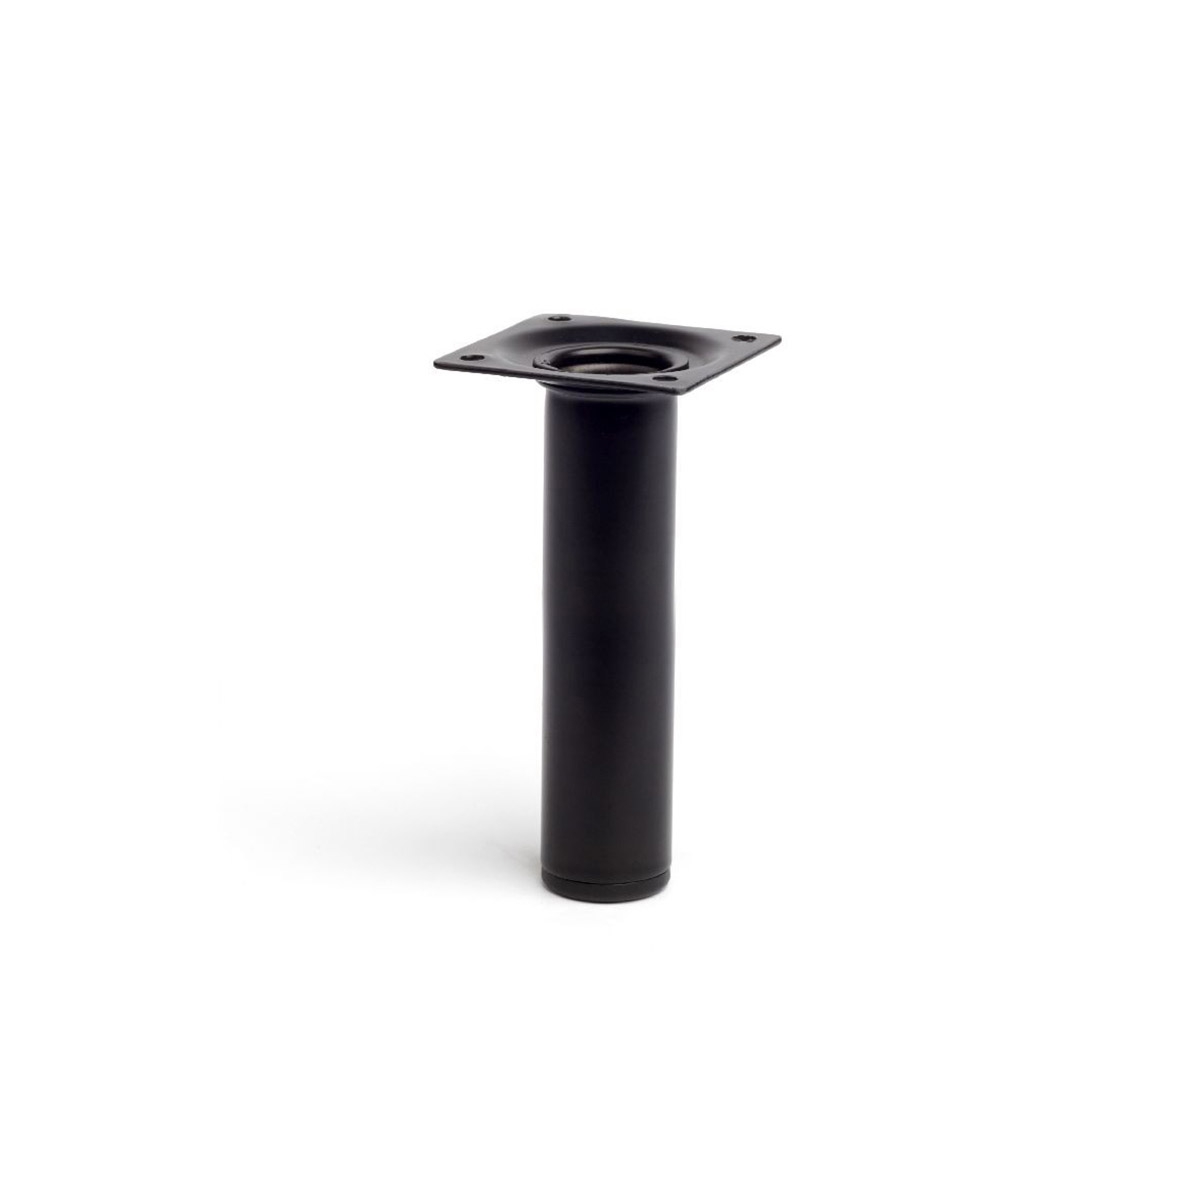 Pied cylindrique en acier d'une hauteur de 150 mm et finition noir. Dimensions: 30x30x150 mm